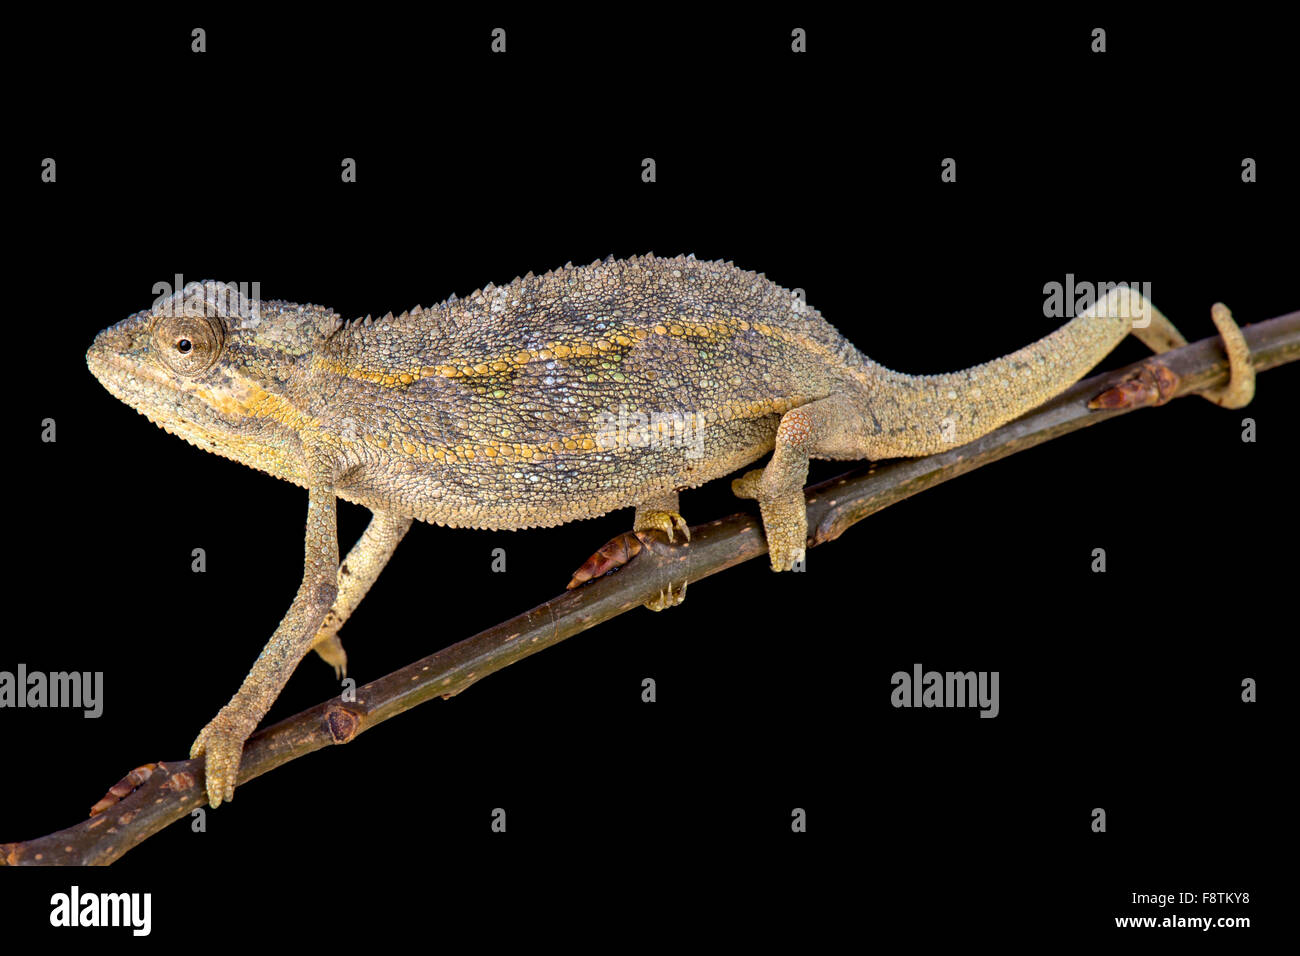 Two-lined chameleon (Trioceros bitaeniatus) Stock Photo